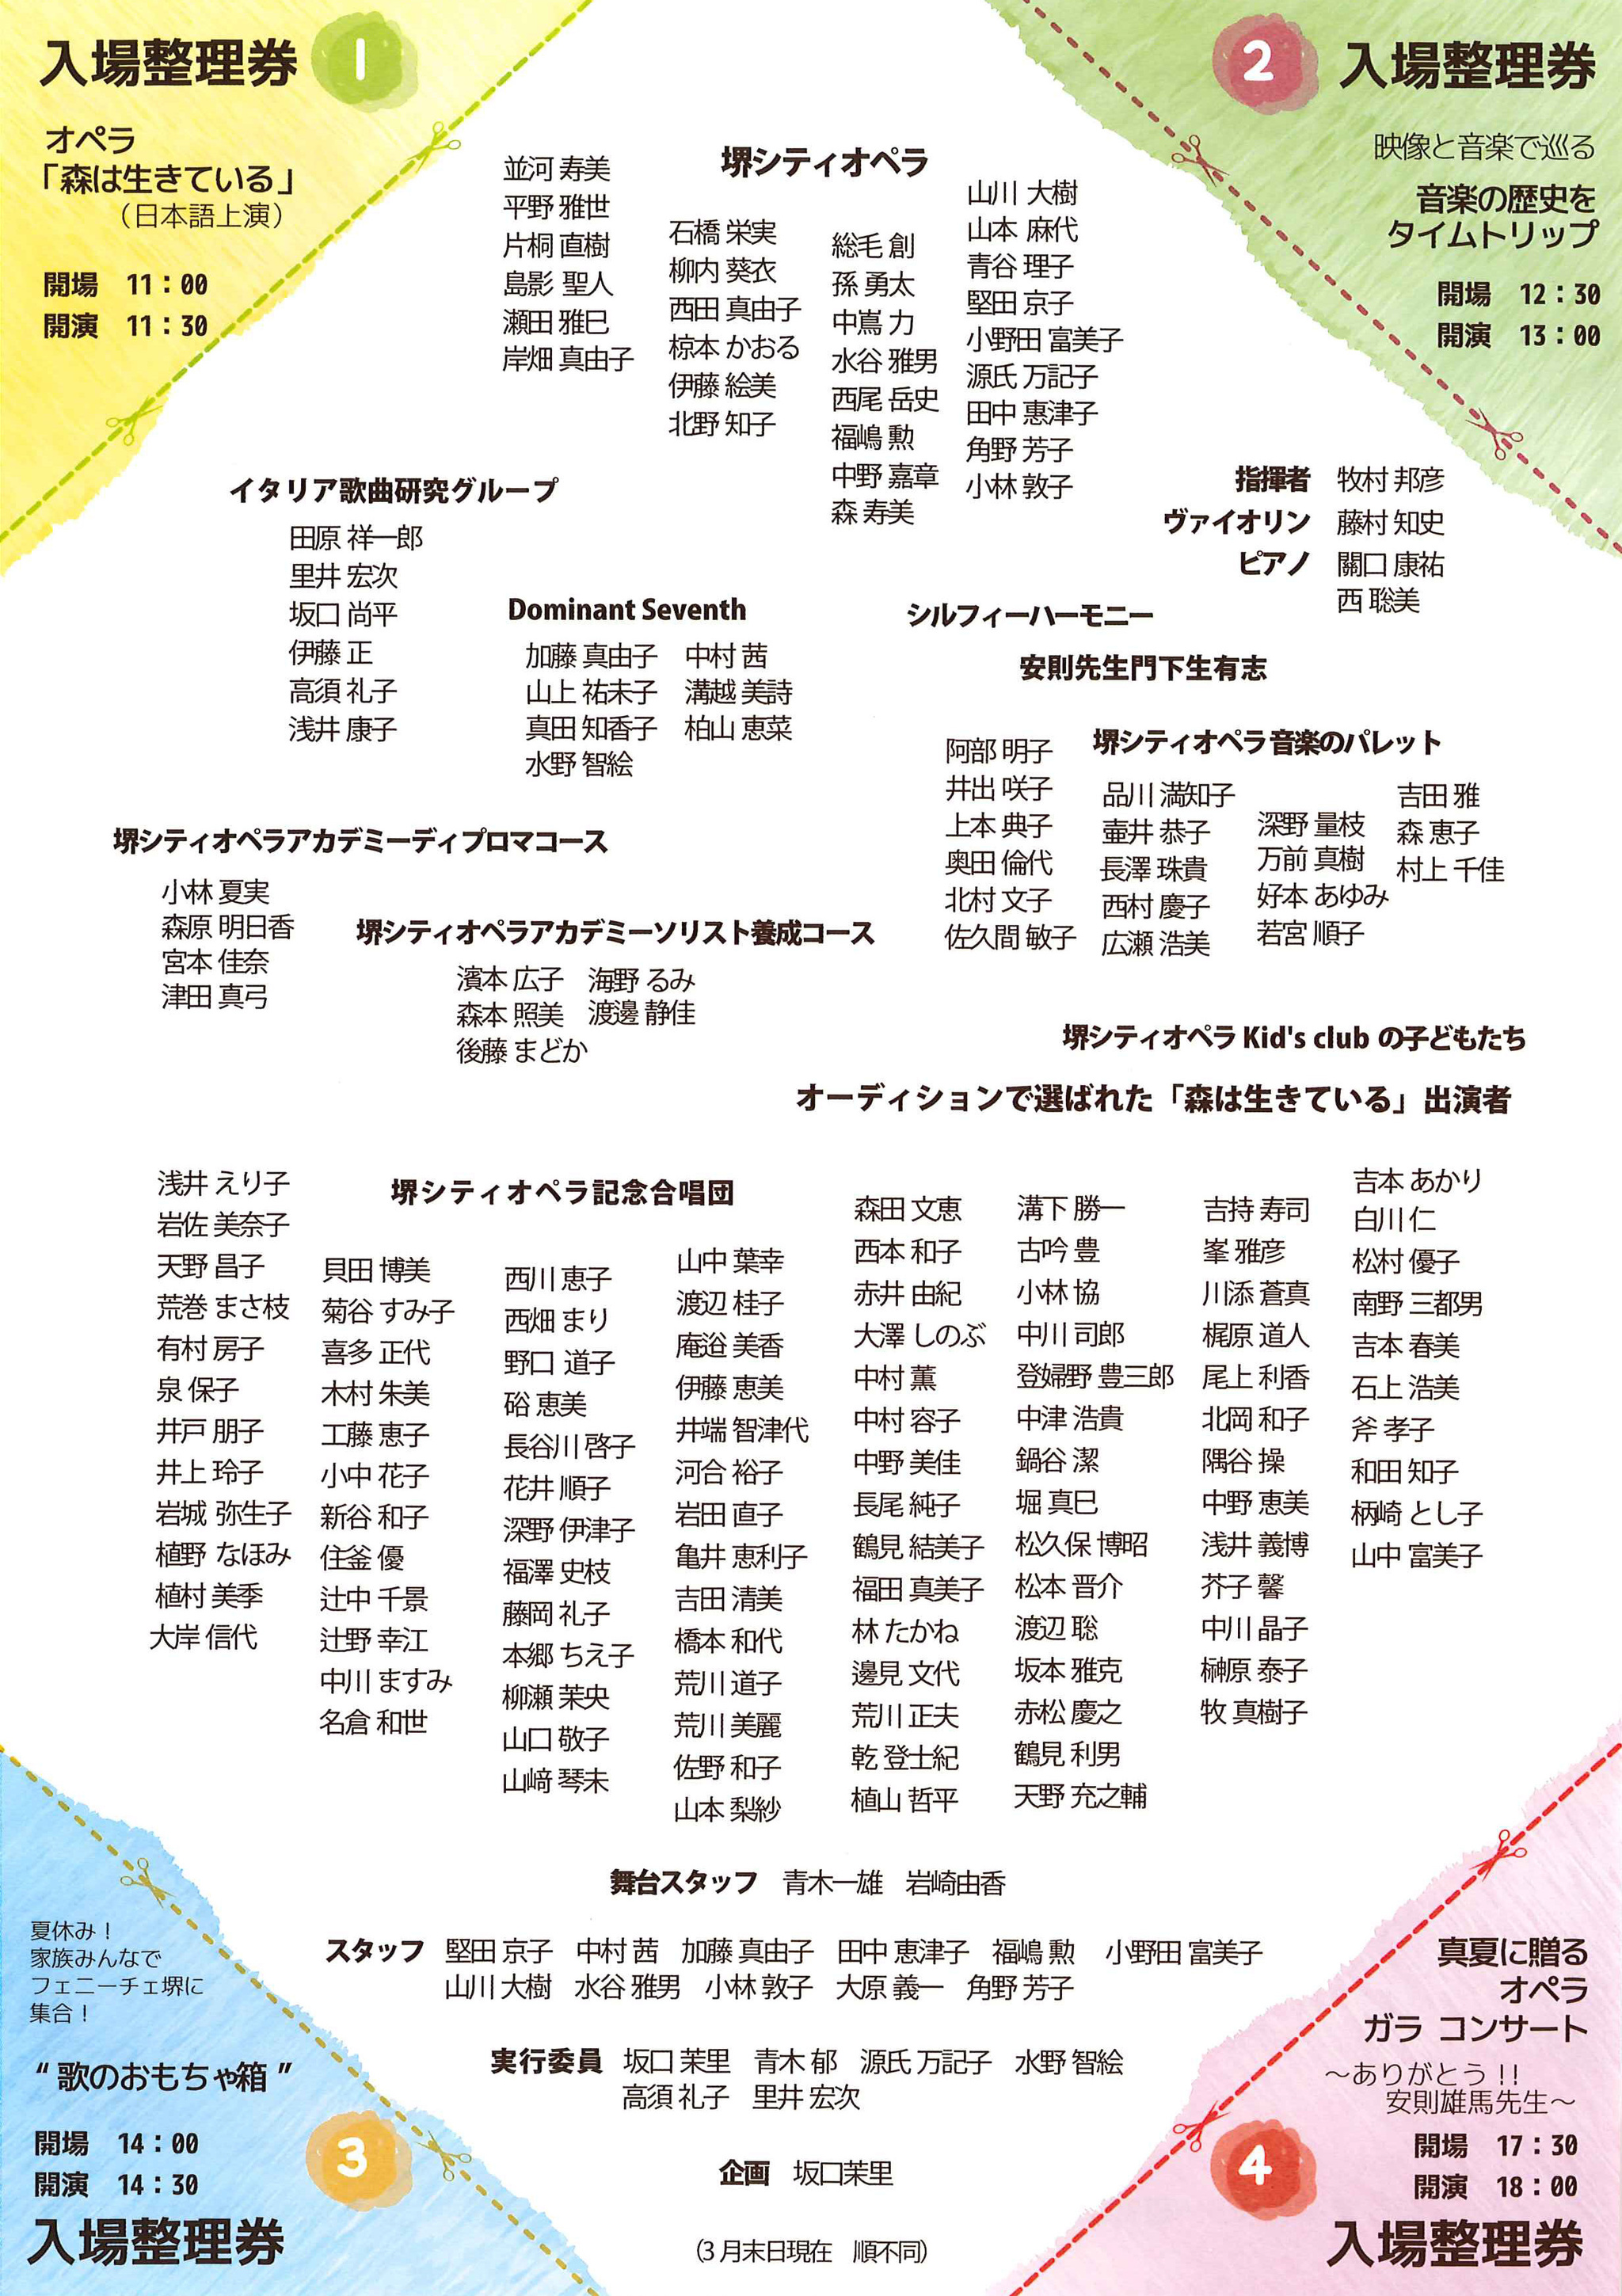 いちにちまるごと音楽祭 堺シティオペラ 音楽 オペラ 公演 コンサート 大阪 堺